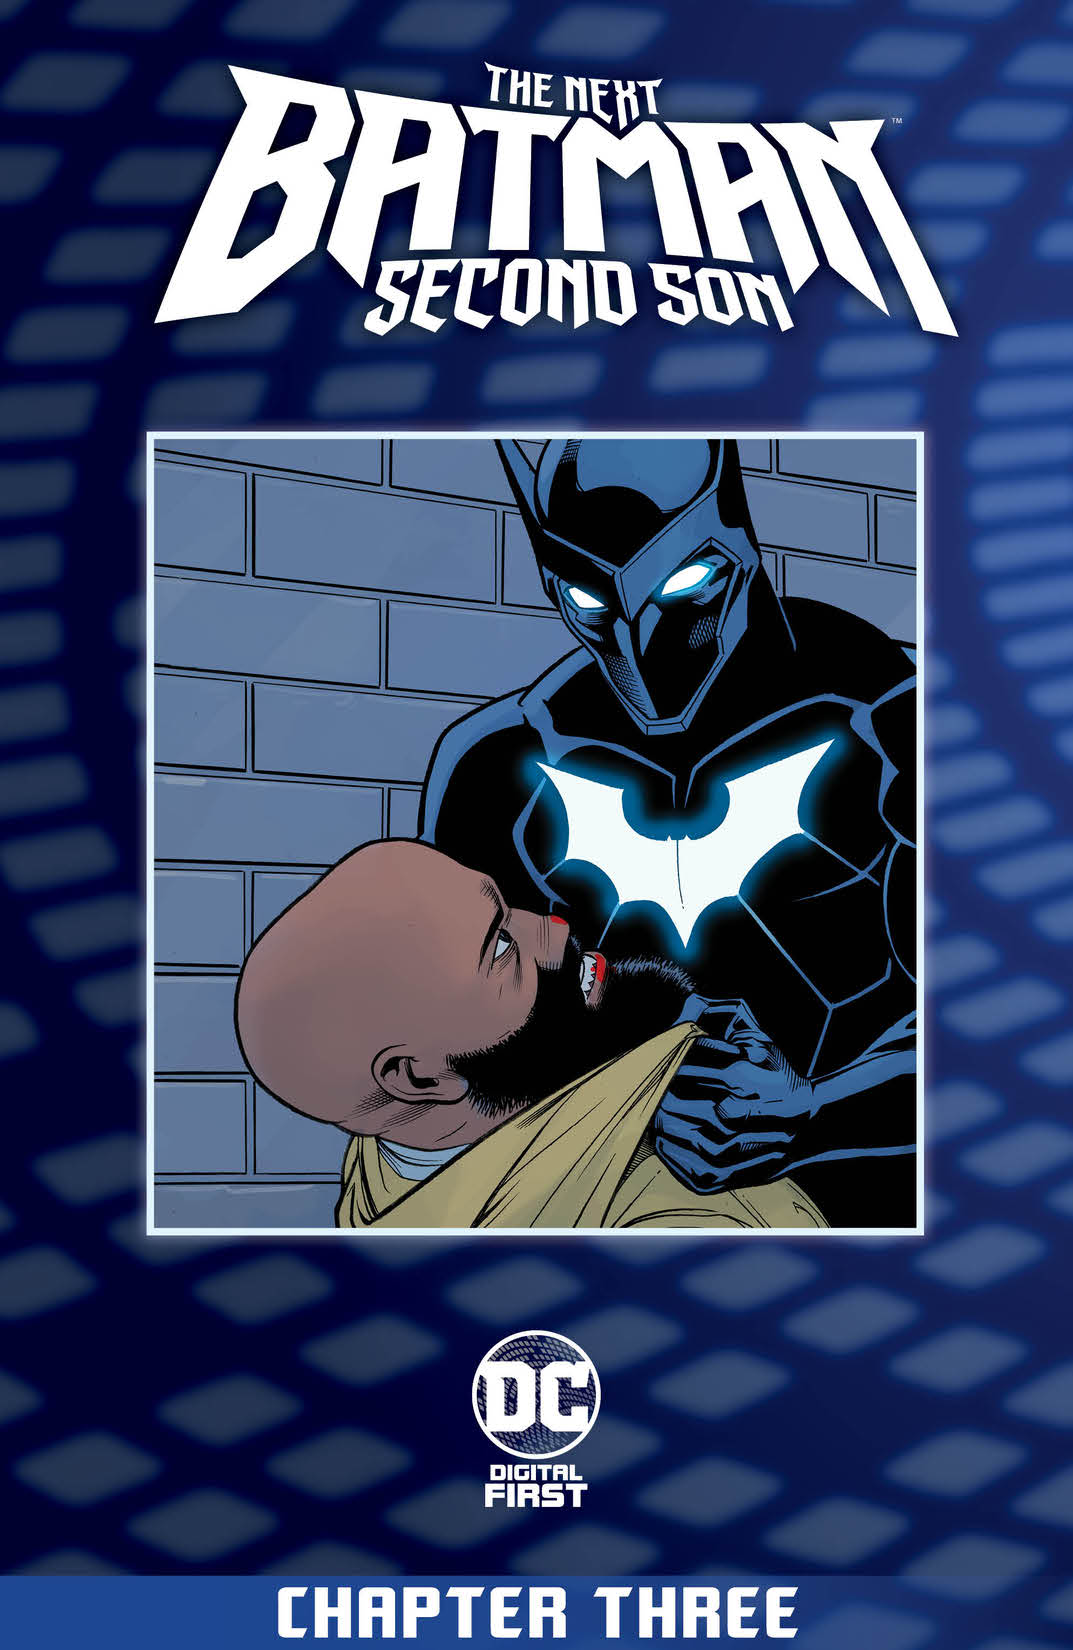 The Next Batman: Second Son #3 preview images